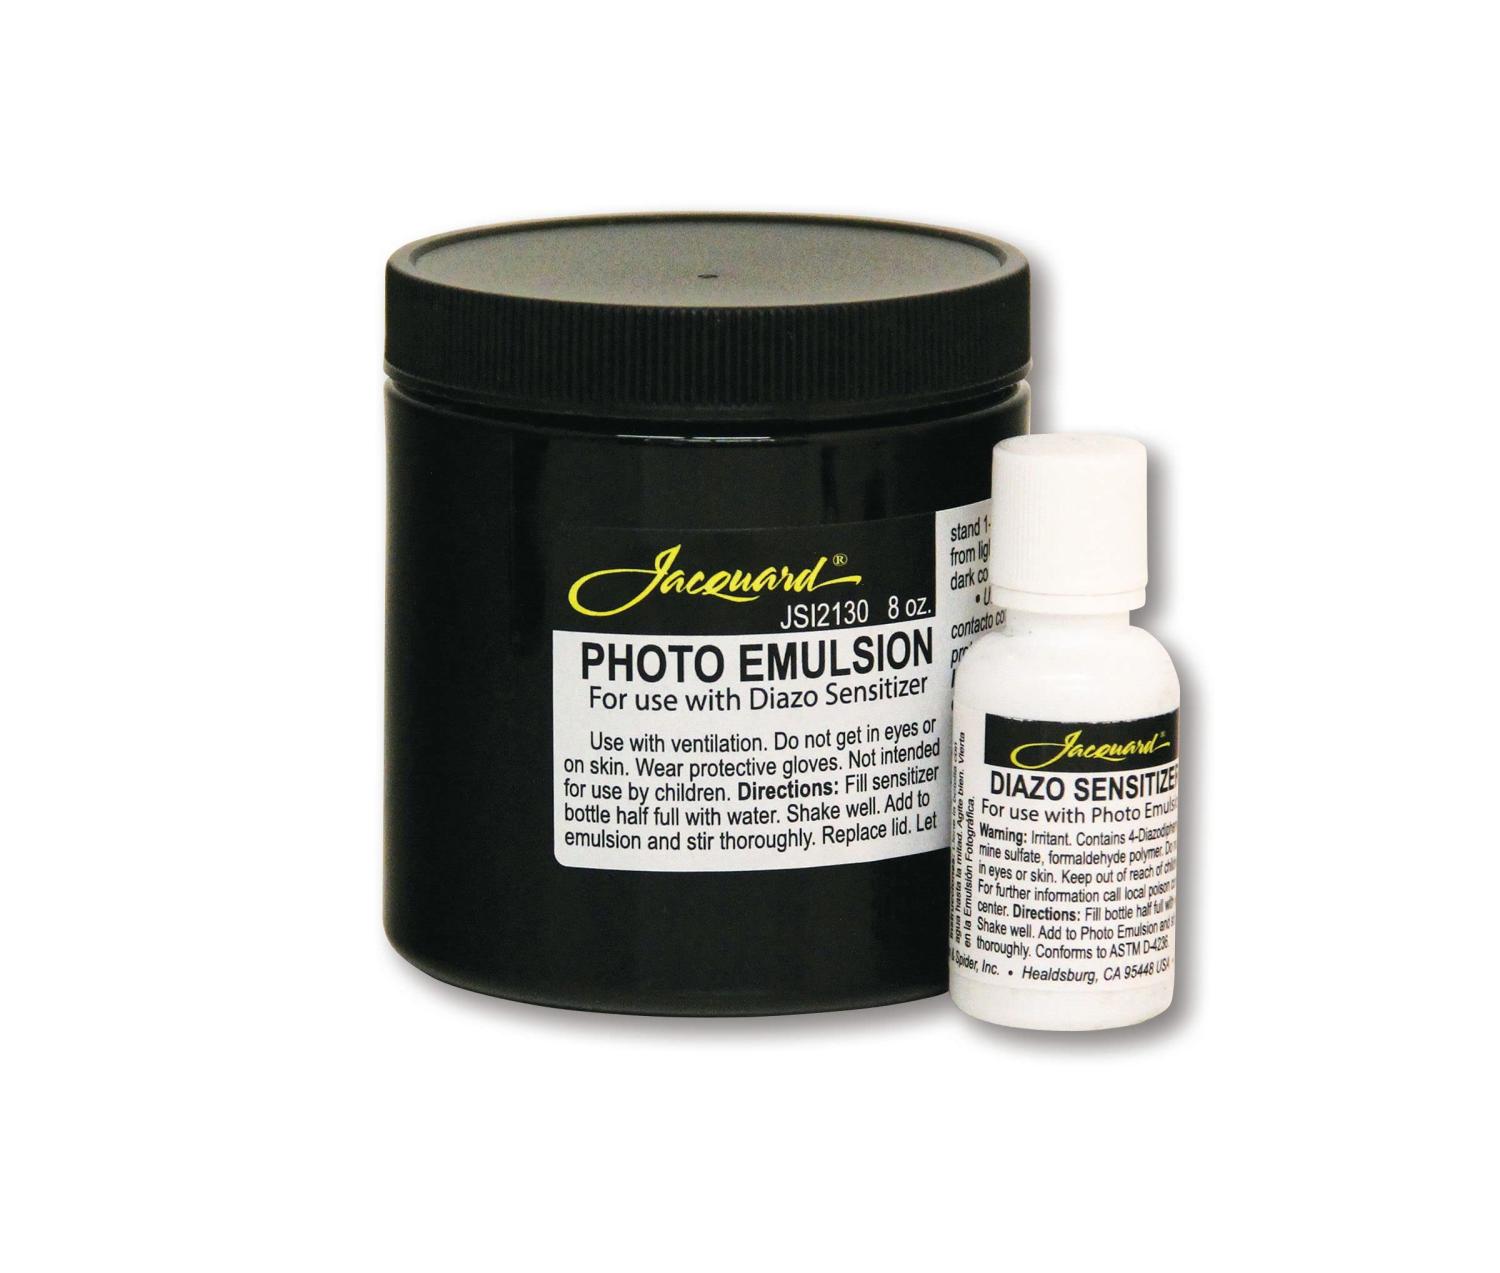 Jacquard Photo Emulsion & Diazo Sensitizer 8oz - Light Sensitive ...